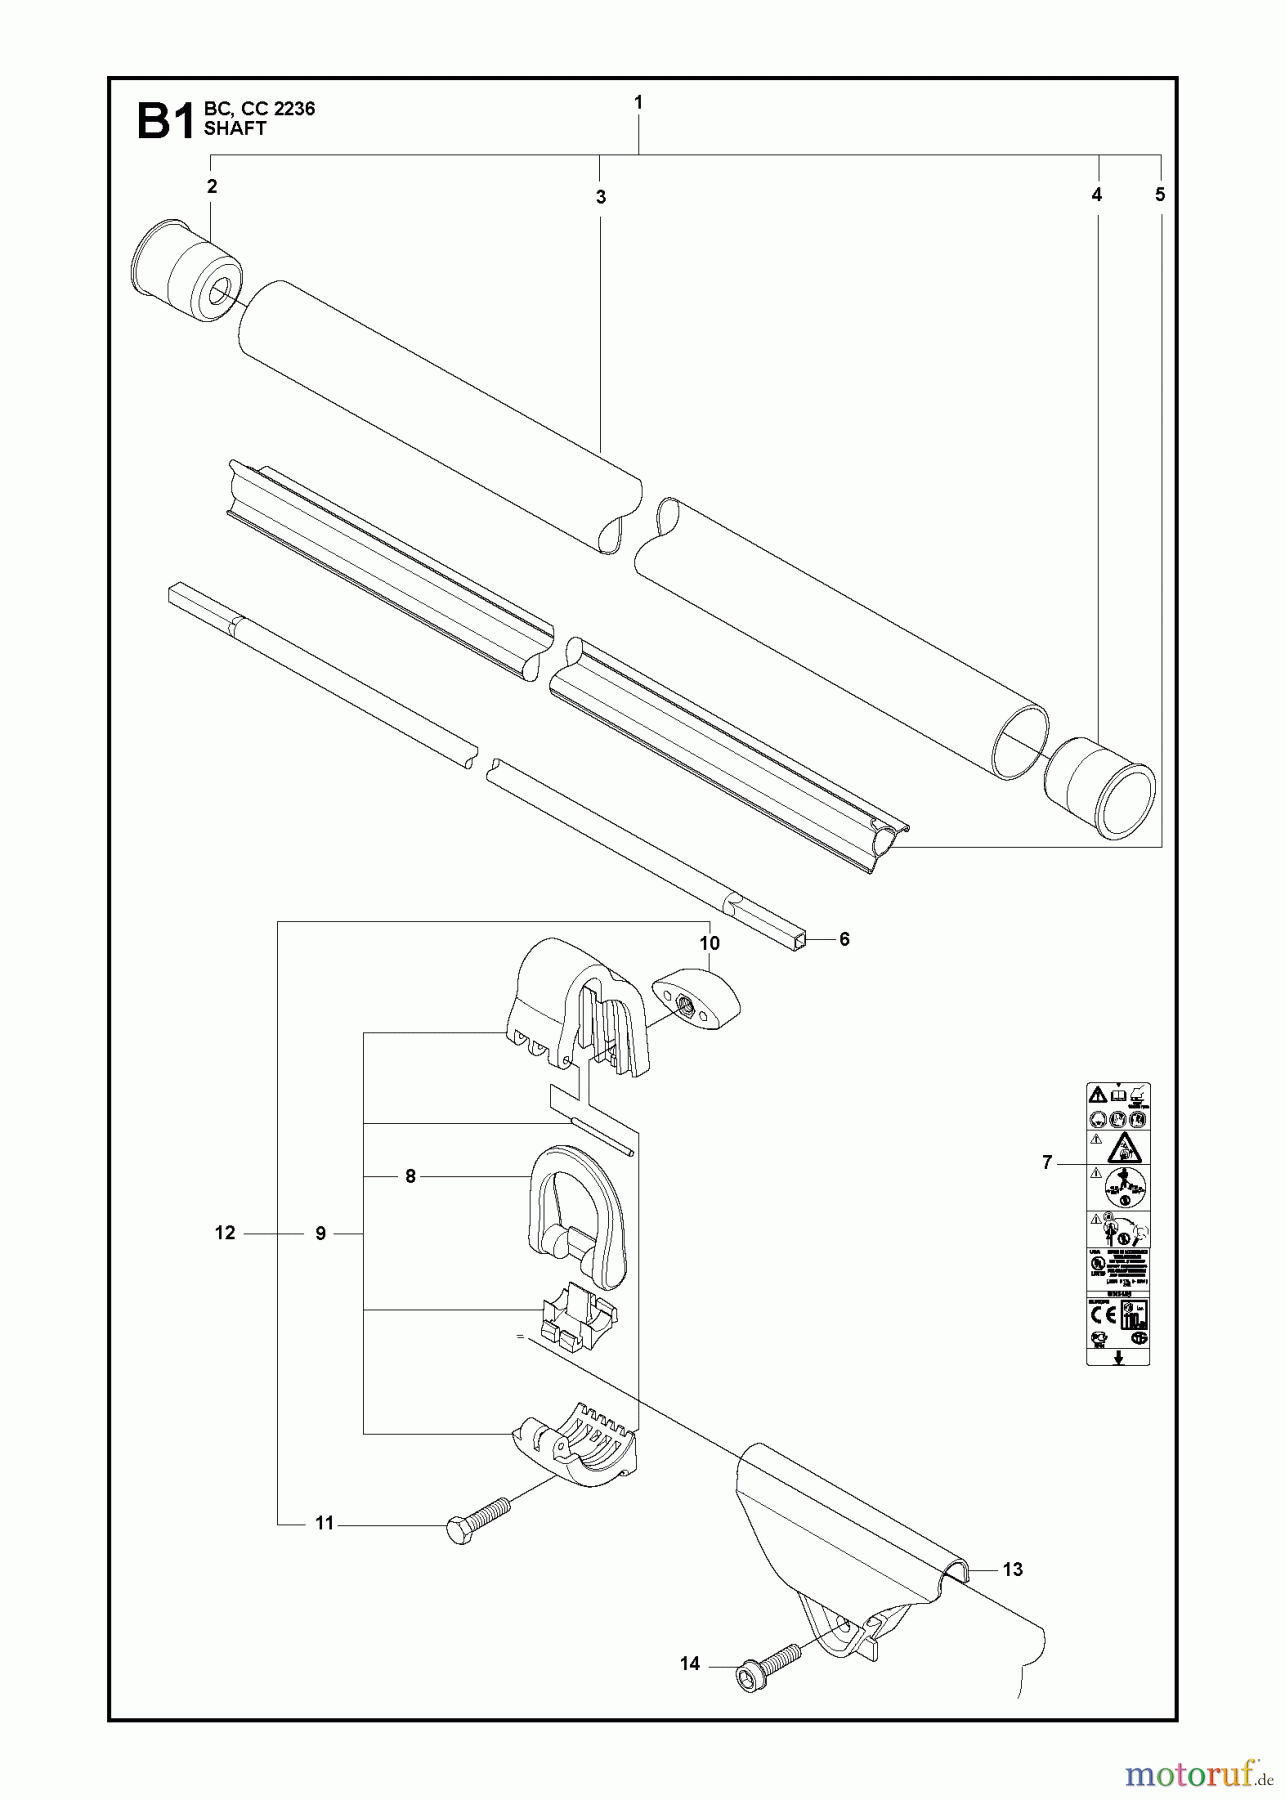  Jonsered Motorsensen, Trimmer CC2236 - Jonsered String/Brush Trimmer (2010-11) SHAFT